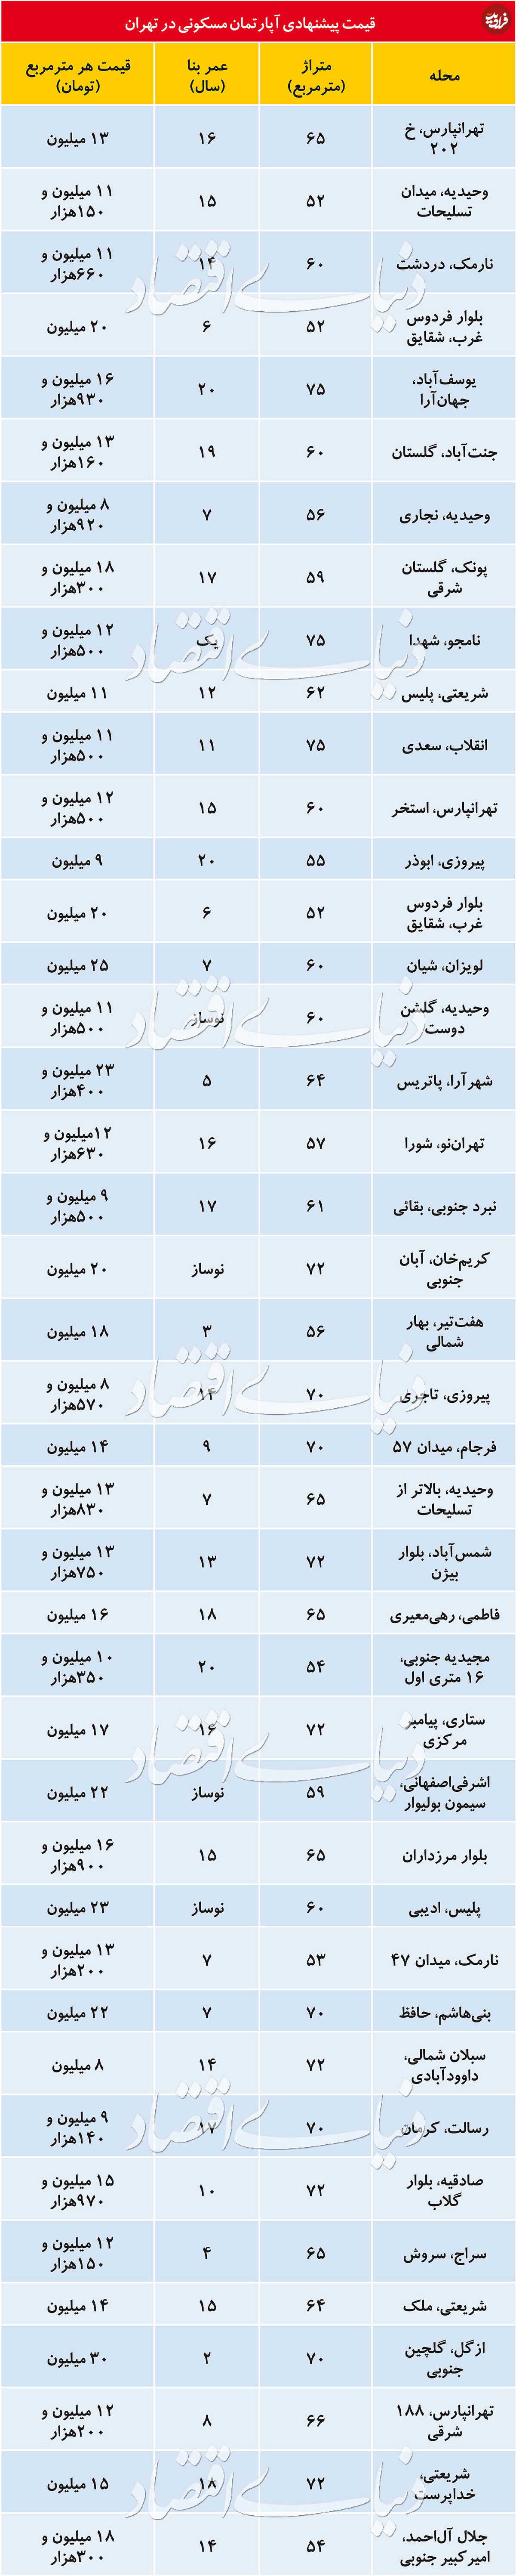 قیمت آپارتمان با متراژهای متفاوت در تهران